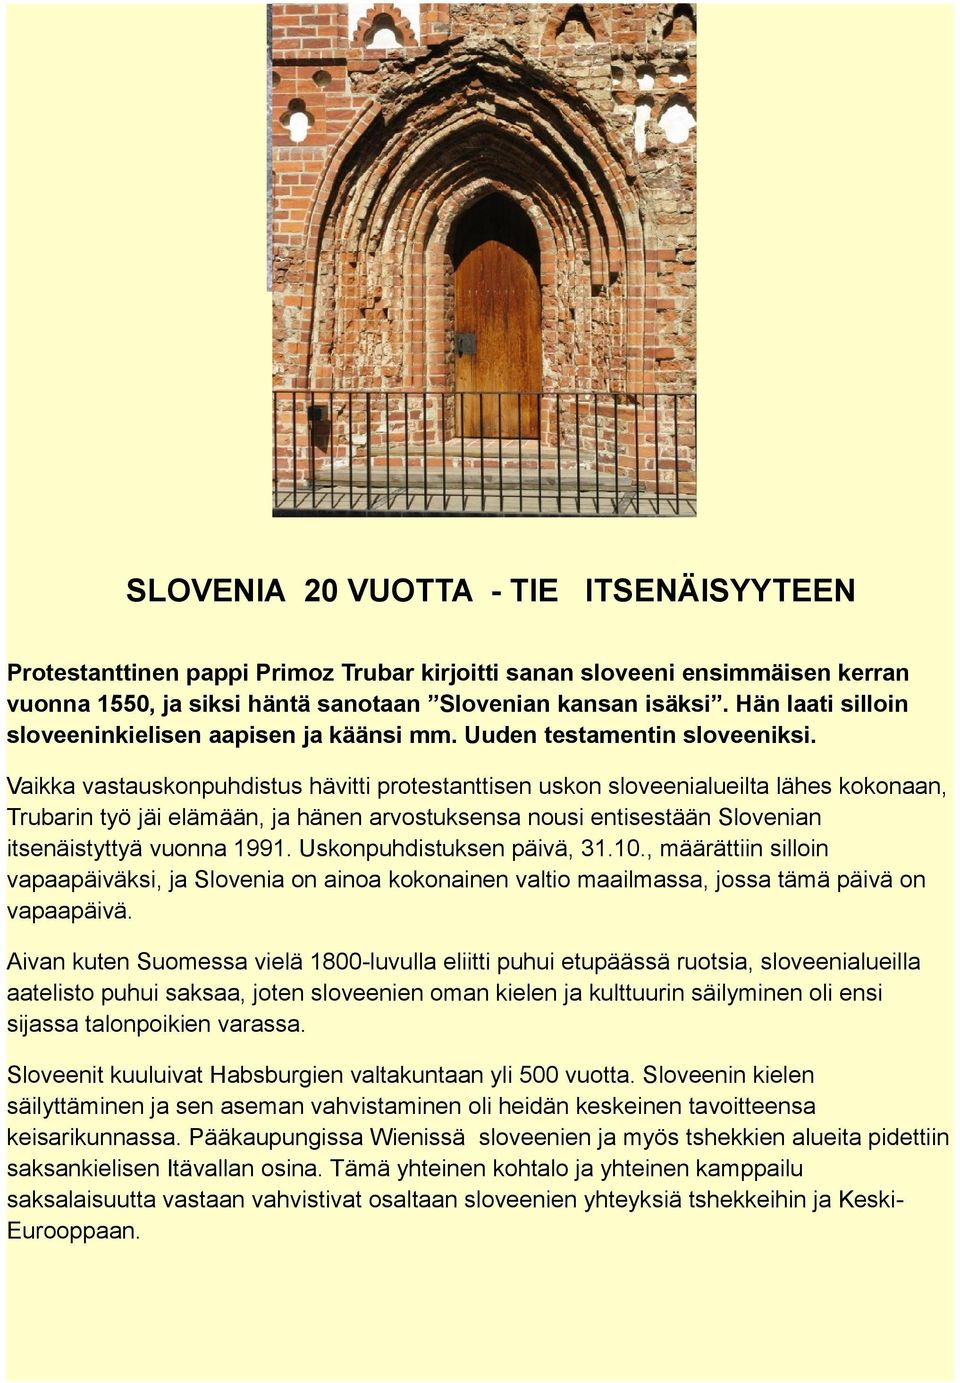 Vaikka vastauskonpuhdistus hävitti protestanttisen uskon sloveenialueilta lähes kokonaan, Trubarin työ jäi elämään, ja hänen arvostuksensa nousi entisestään Slovenian itsenäistyttyä vuonna 1991.